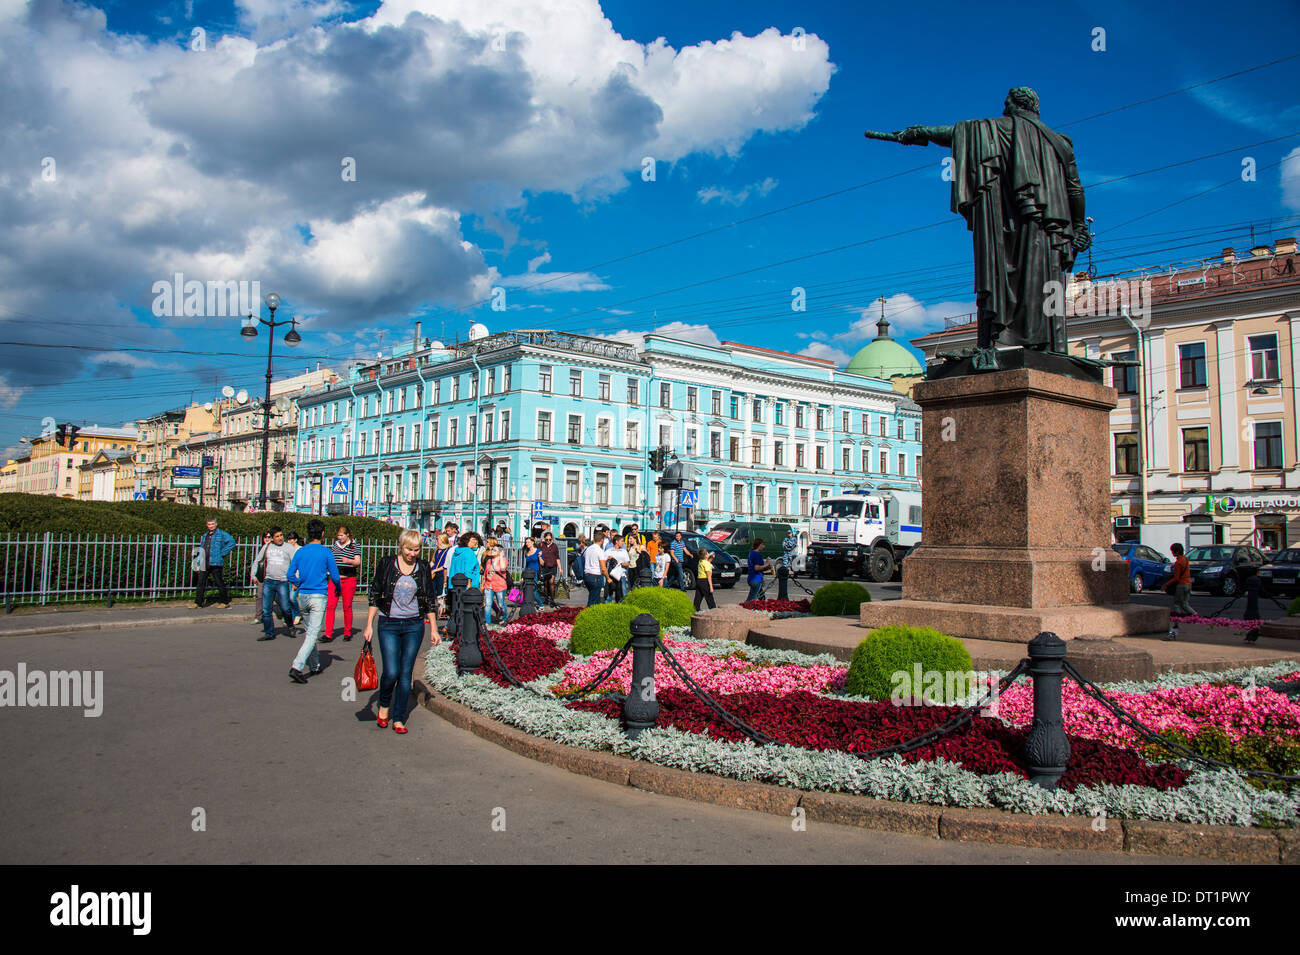 St. Petersburg, Russia, Europe Stock Photo